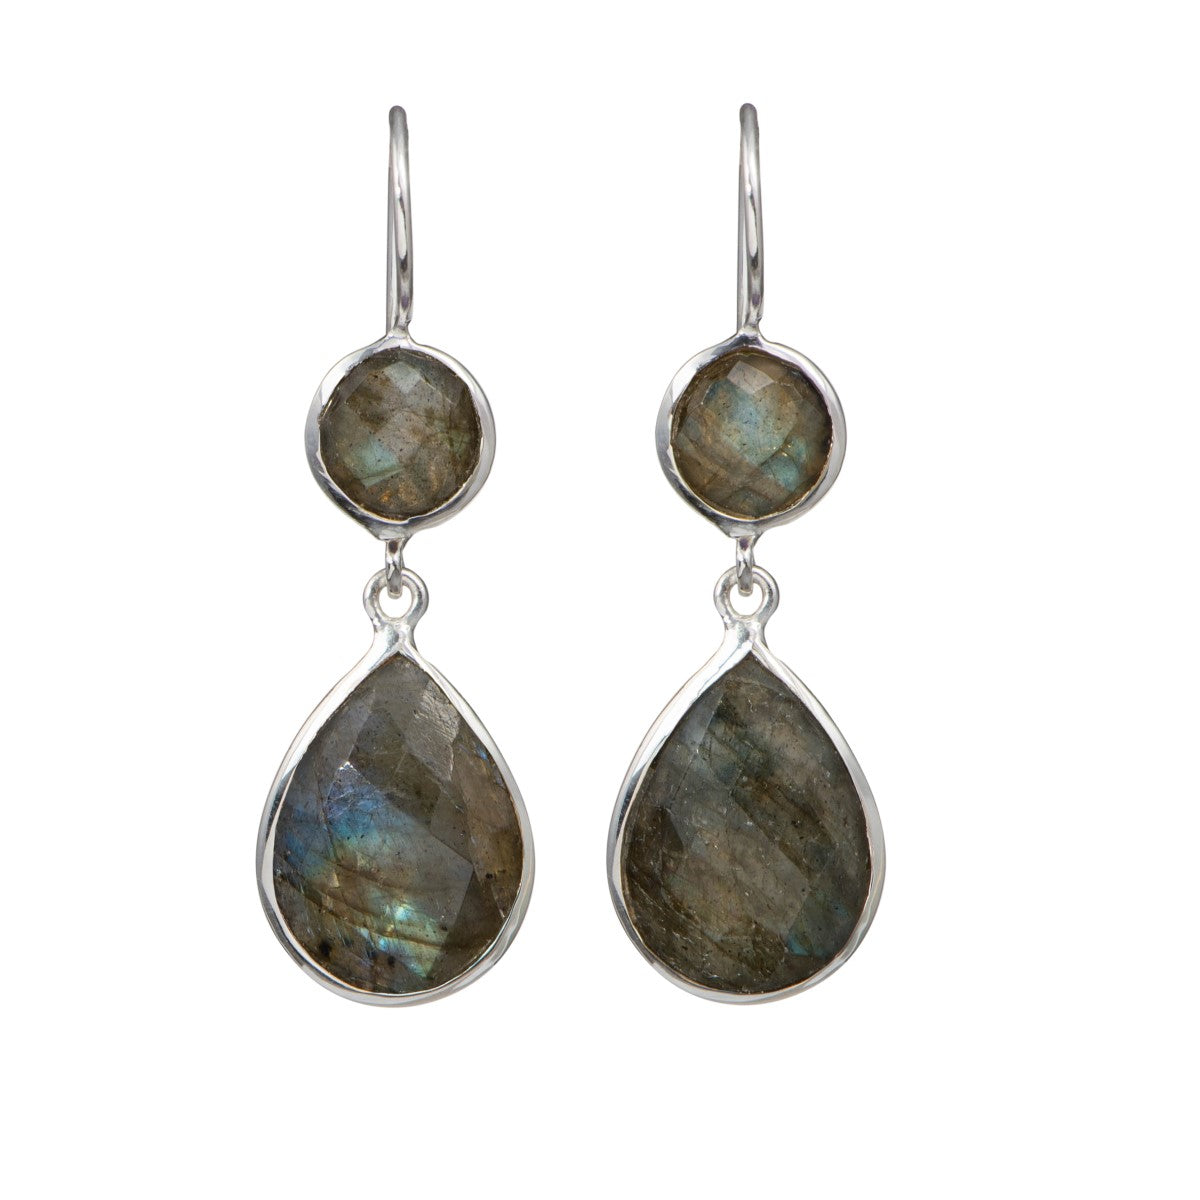 Labradorite Gemstone Two Stone Earrings in Sterling Silver - Teardrop